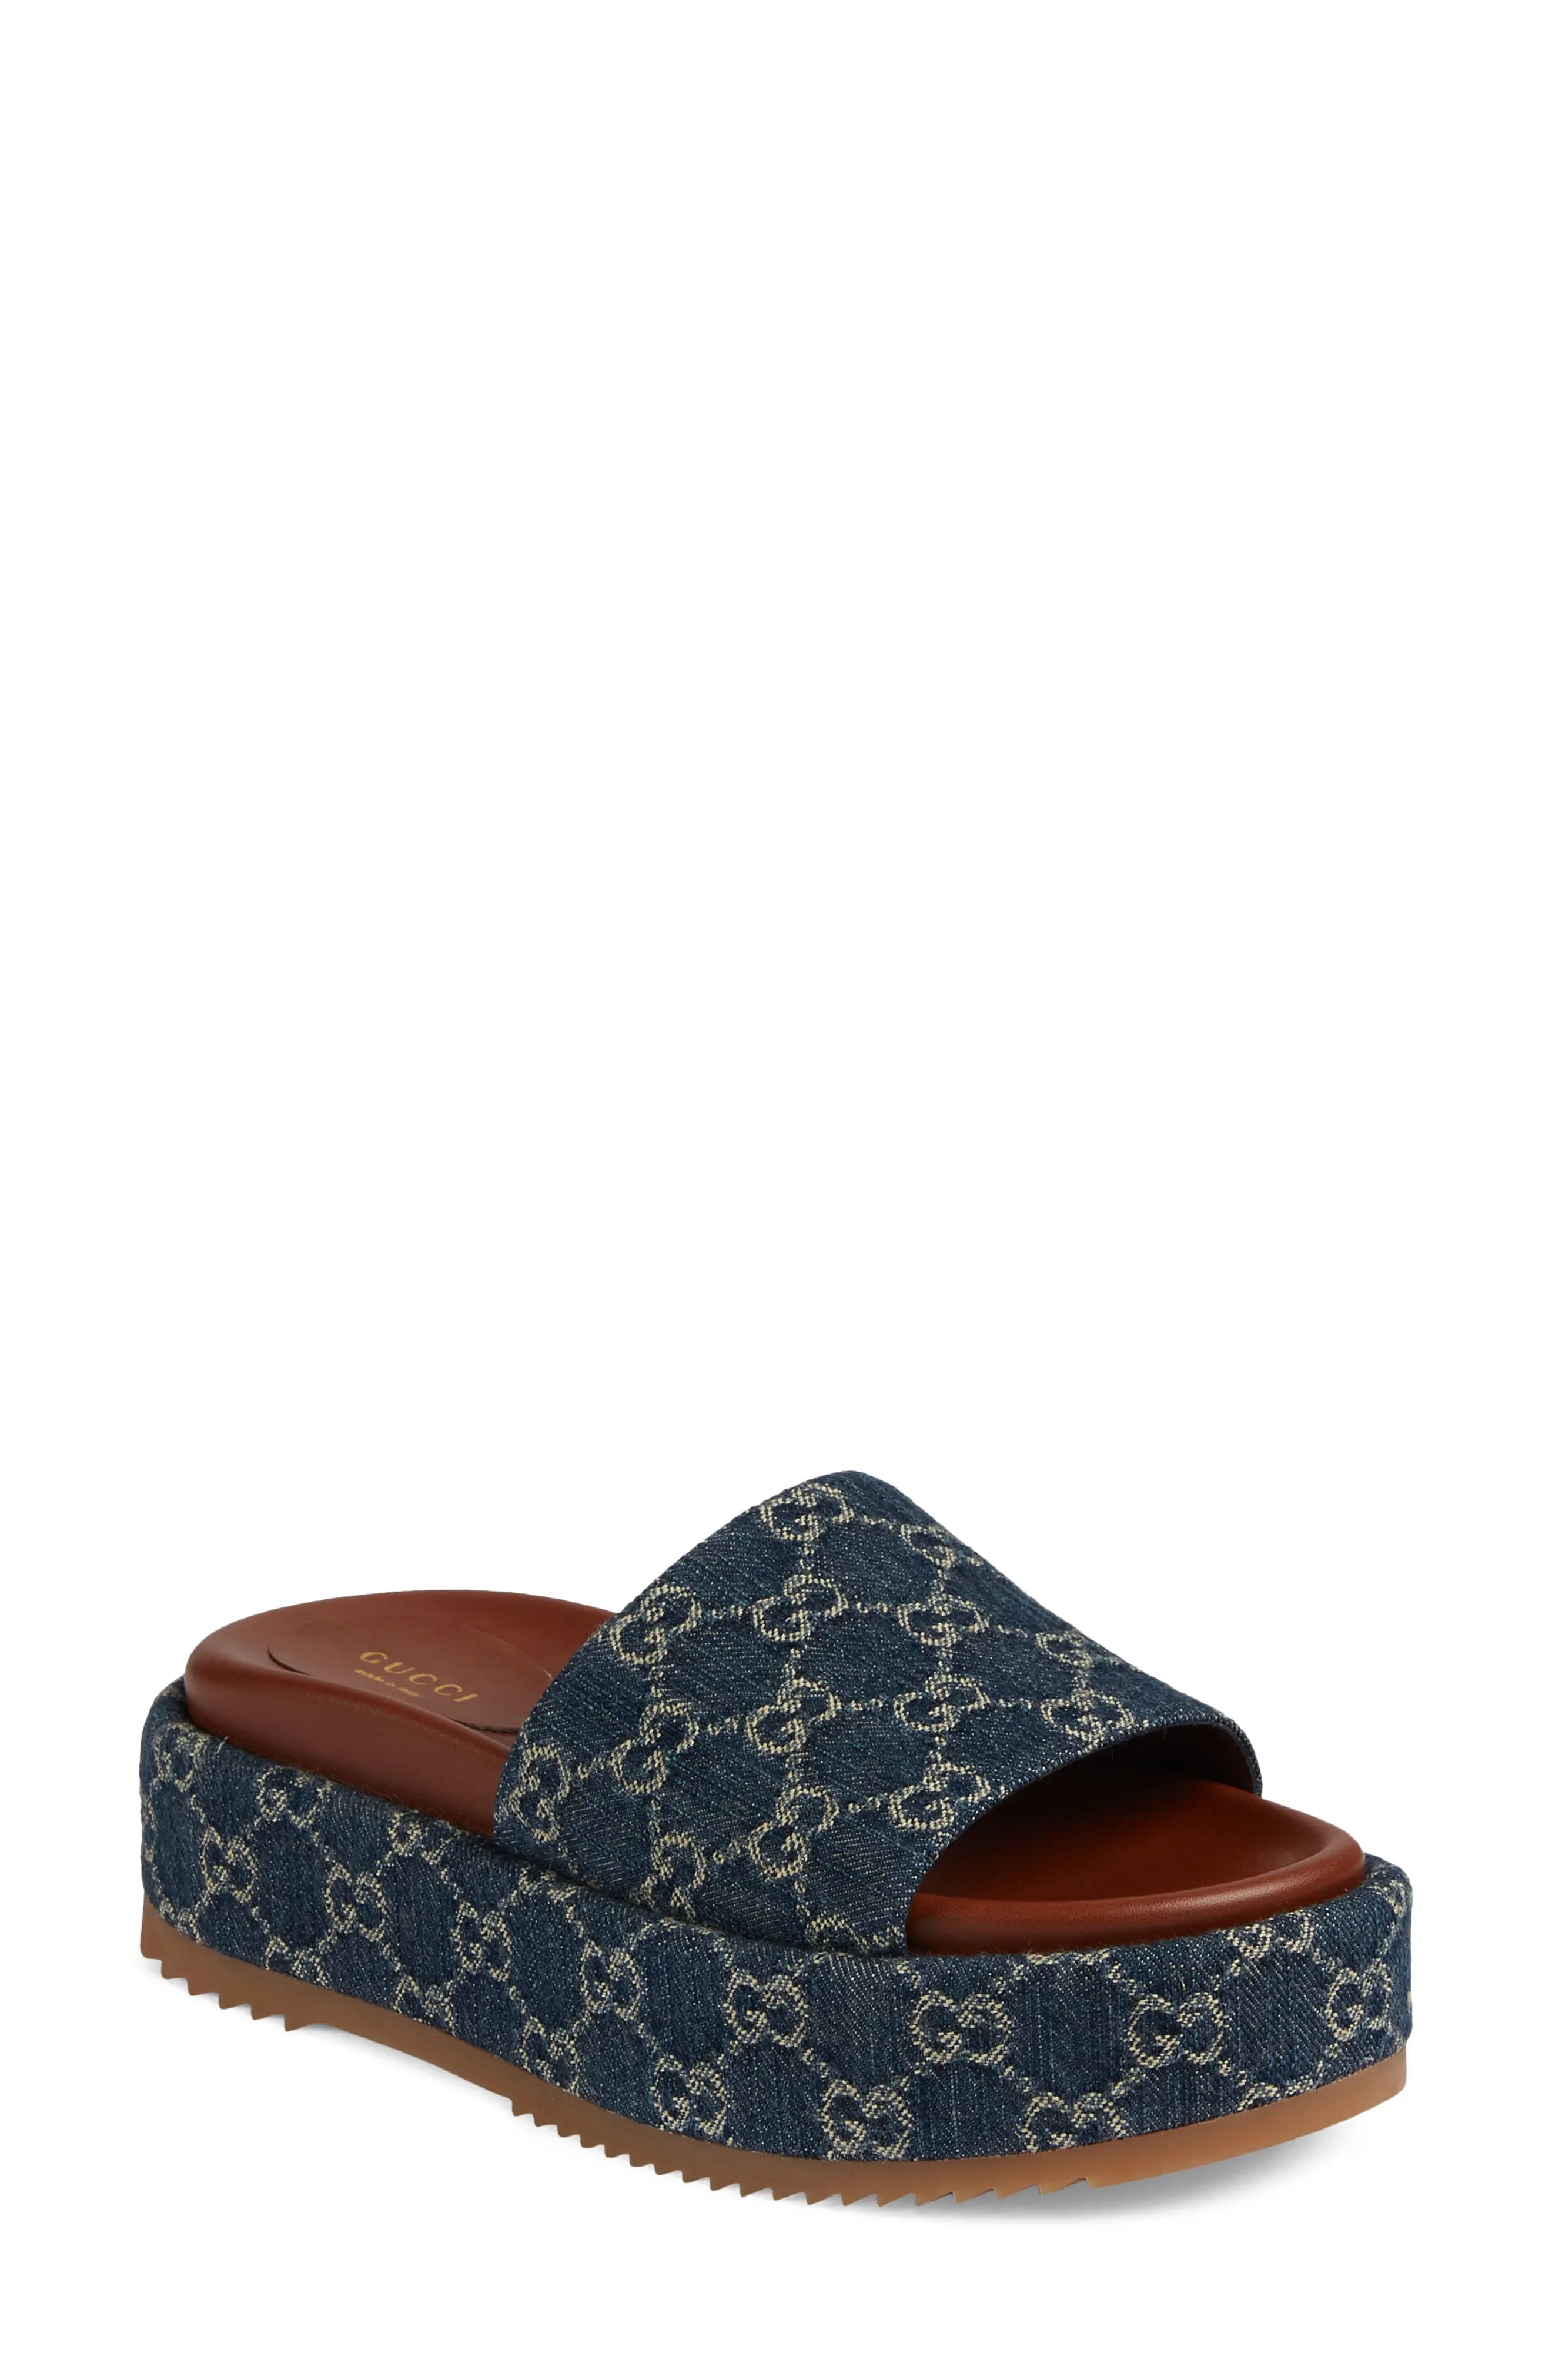 Gucci Angelina GG Logo Platform Slide Sandal in Blue Tea at Nordstrom, Size 8.5Us | Nordstrom